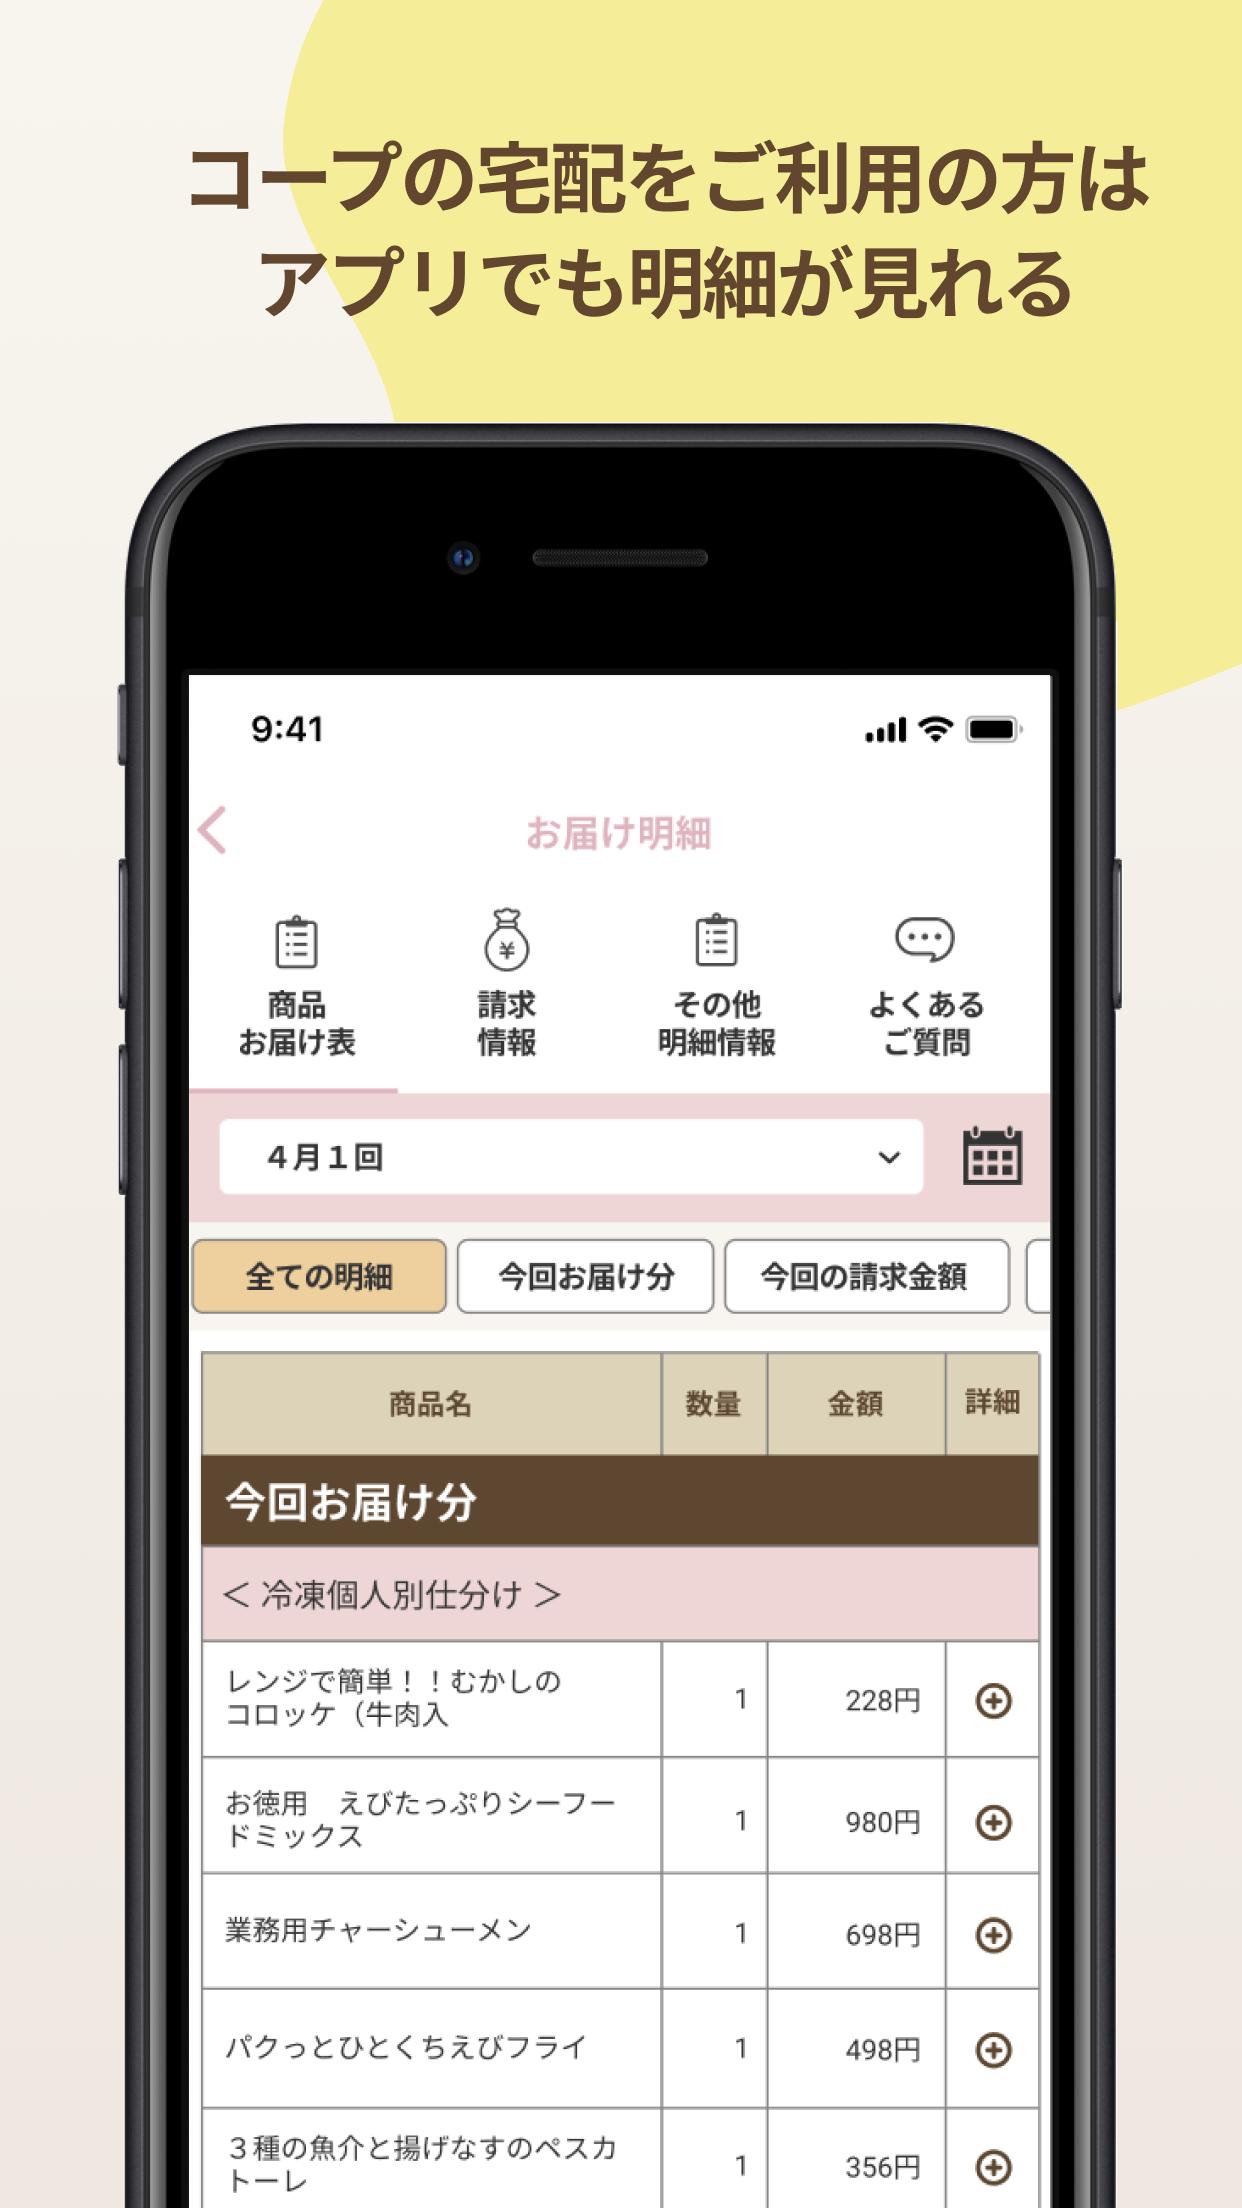 いずみ市民生協アプリ 1.0.7 Screenshot 4